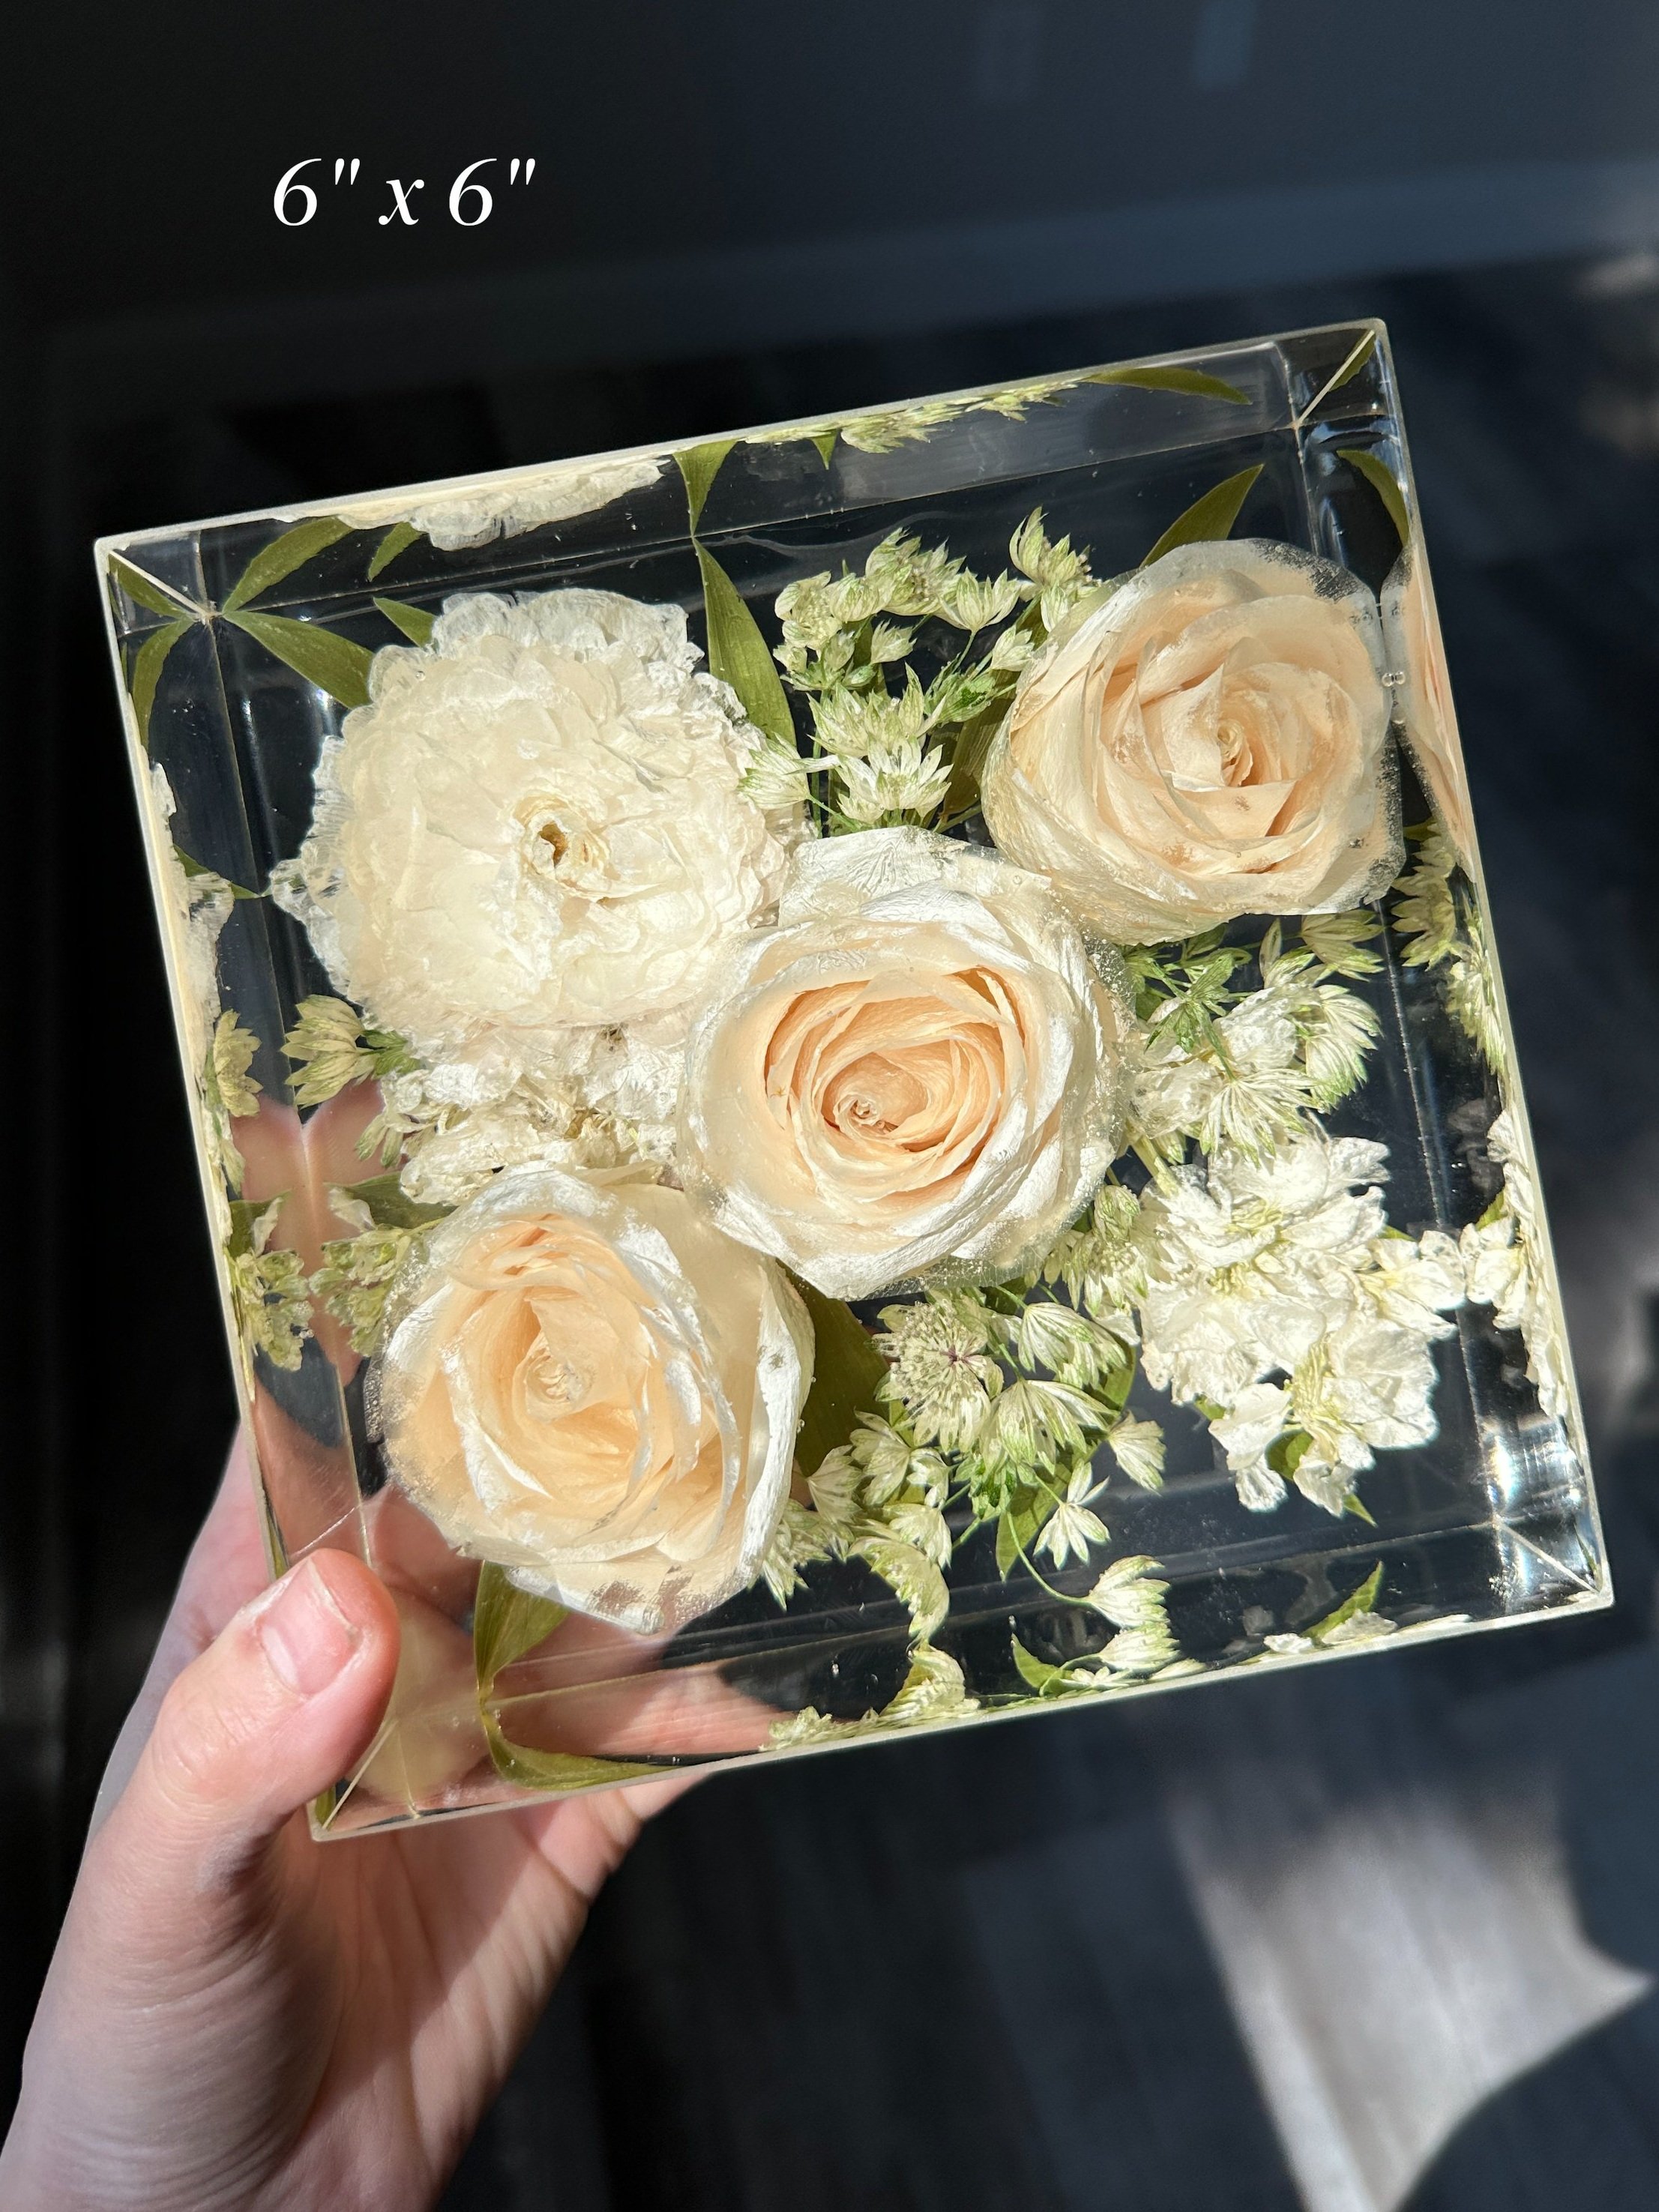 Resin Bouquet - Wedding Flower Preservation